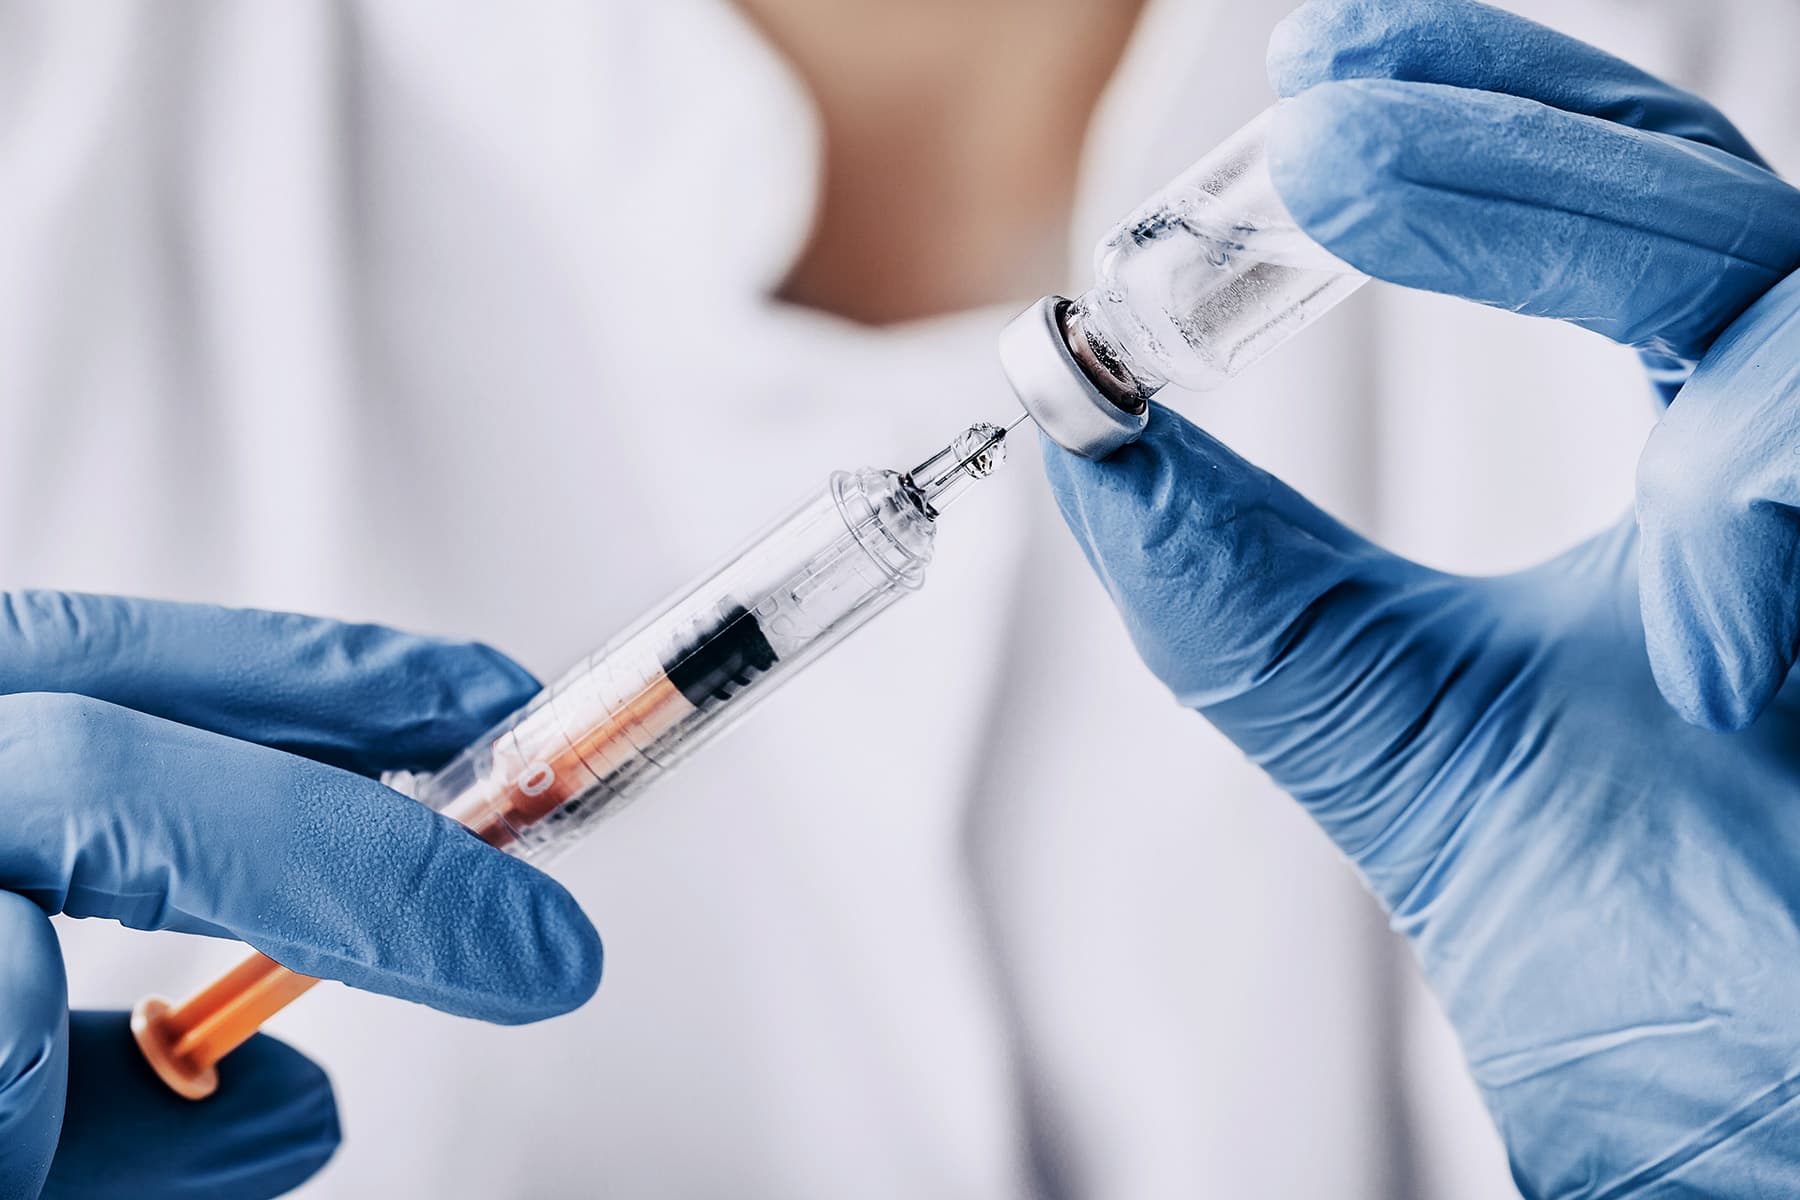 Εμβόλια Covid: Η αποτελεσματικότητα μειώνεται μετά από 6 μήνες χωρίς ενισχυτική δόση